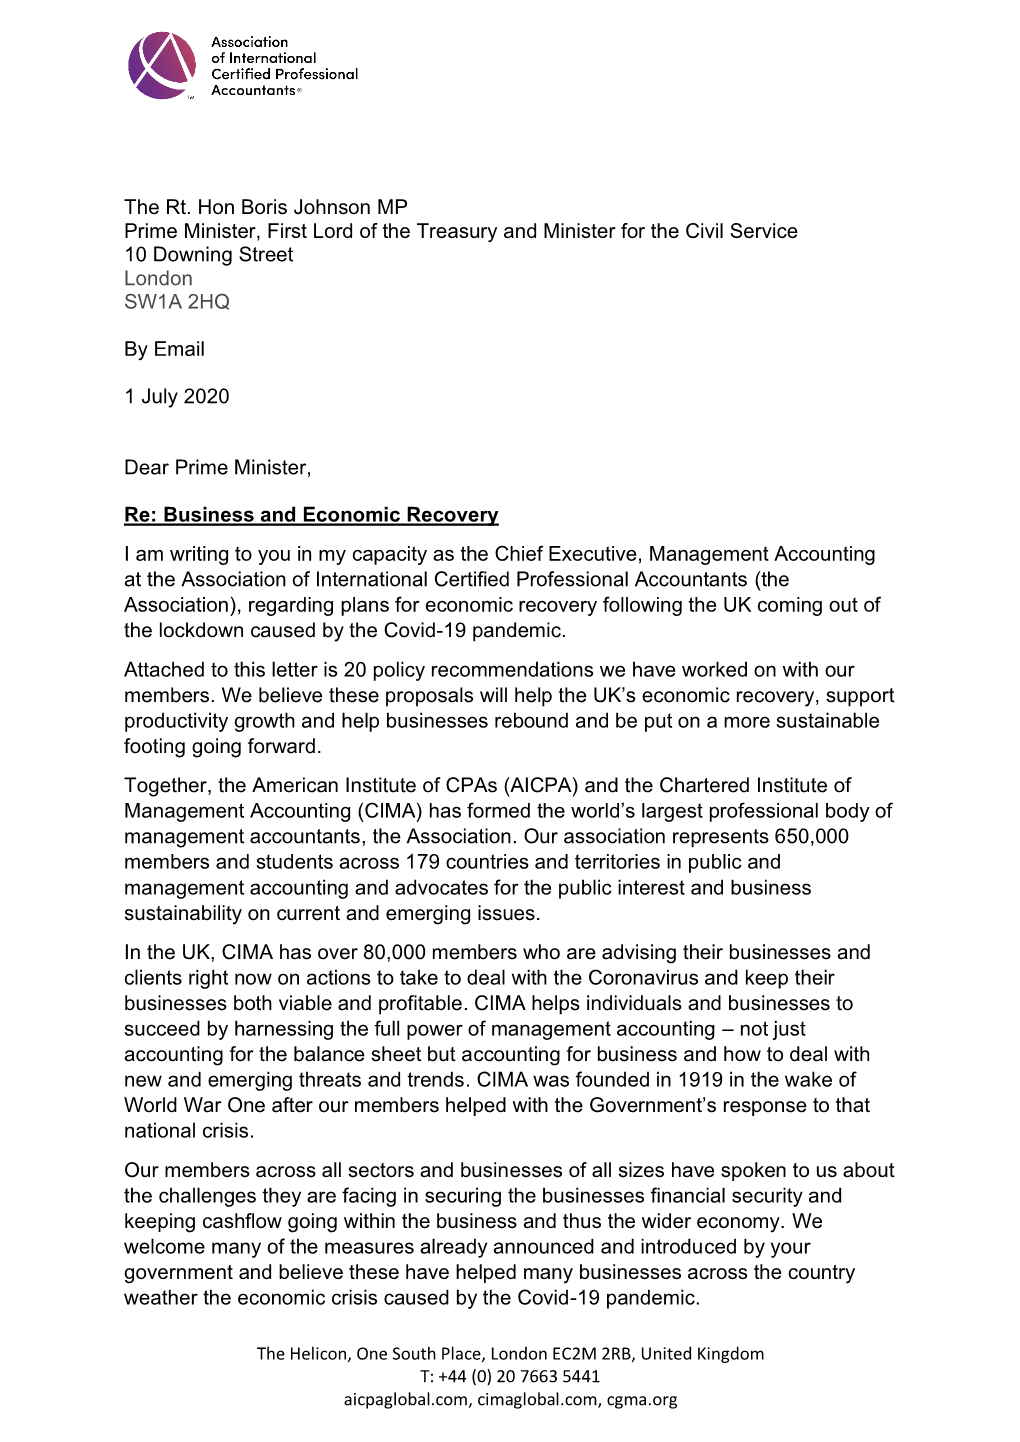 Letter to UK Prime Minister on CIMA 20-Point